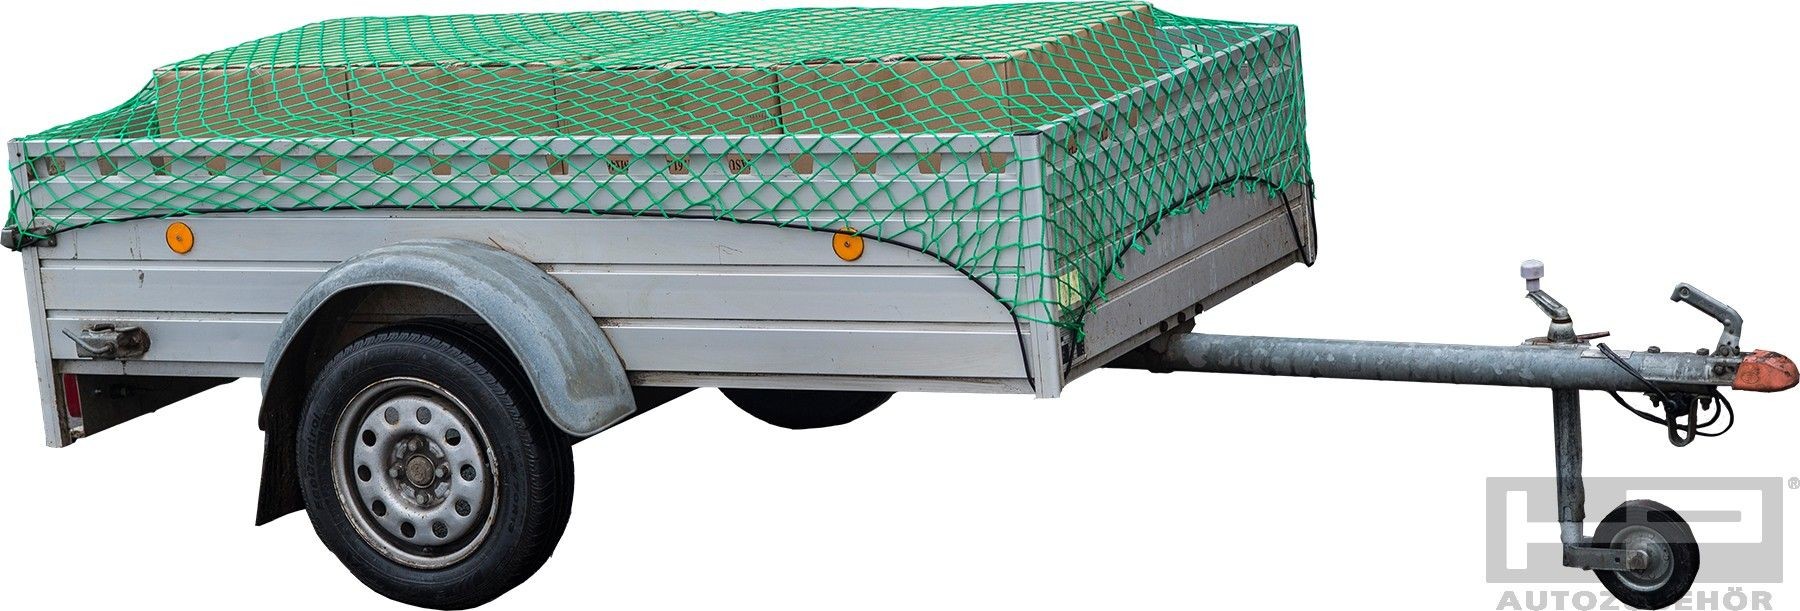 HPAUTO 1,235kg Trailer cargo net 25162 buy